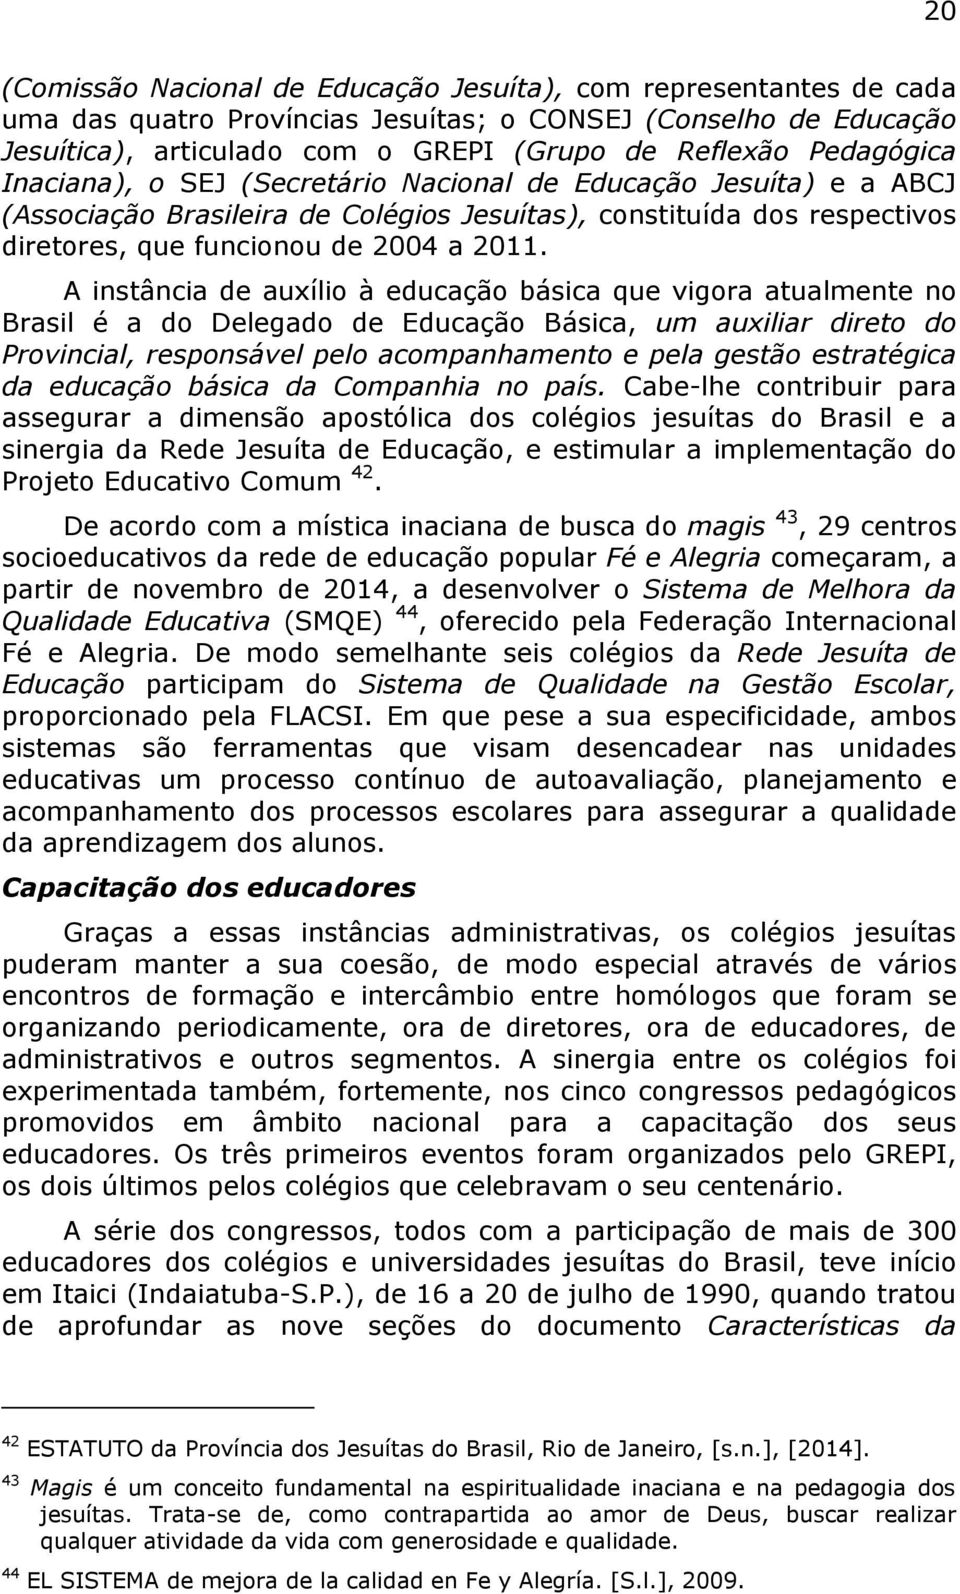 A instância de auxílio à educação básica que vigora atualmente no Brasil é a do Delegado de Educação Básica, um auxiliar direto do Provincial, responsável pelo acompanhamento e pela gestão